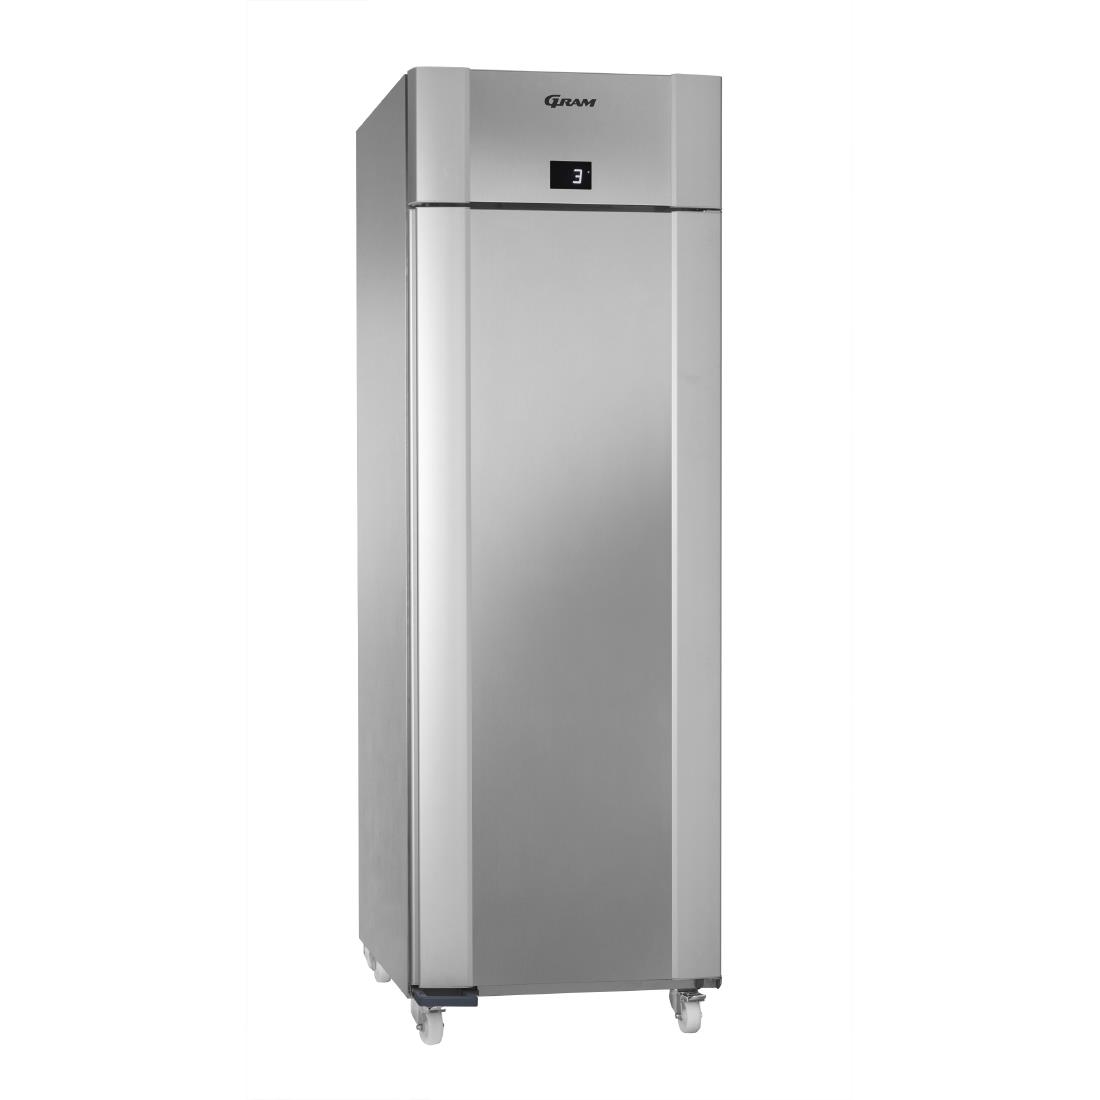 Gram Eco Plus 1 Door 610Ltr Freezer Stainless Steel F 70 CCG C1 4N